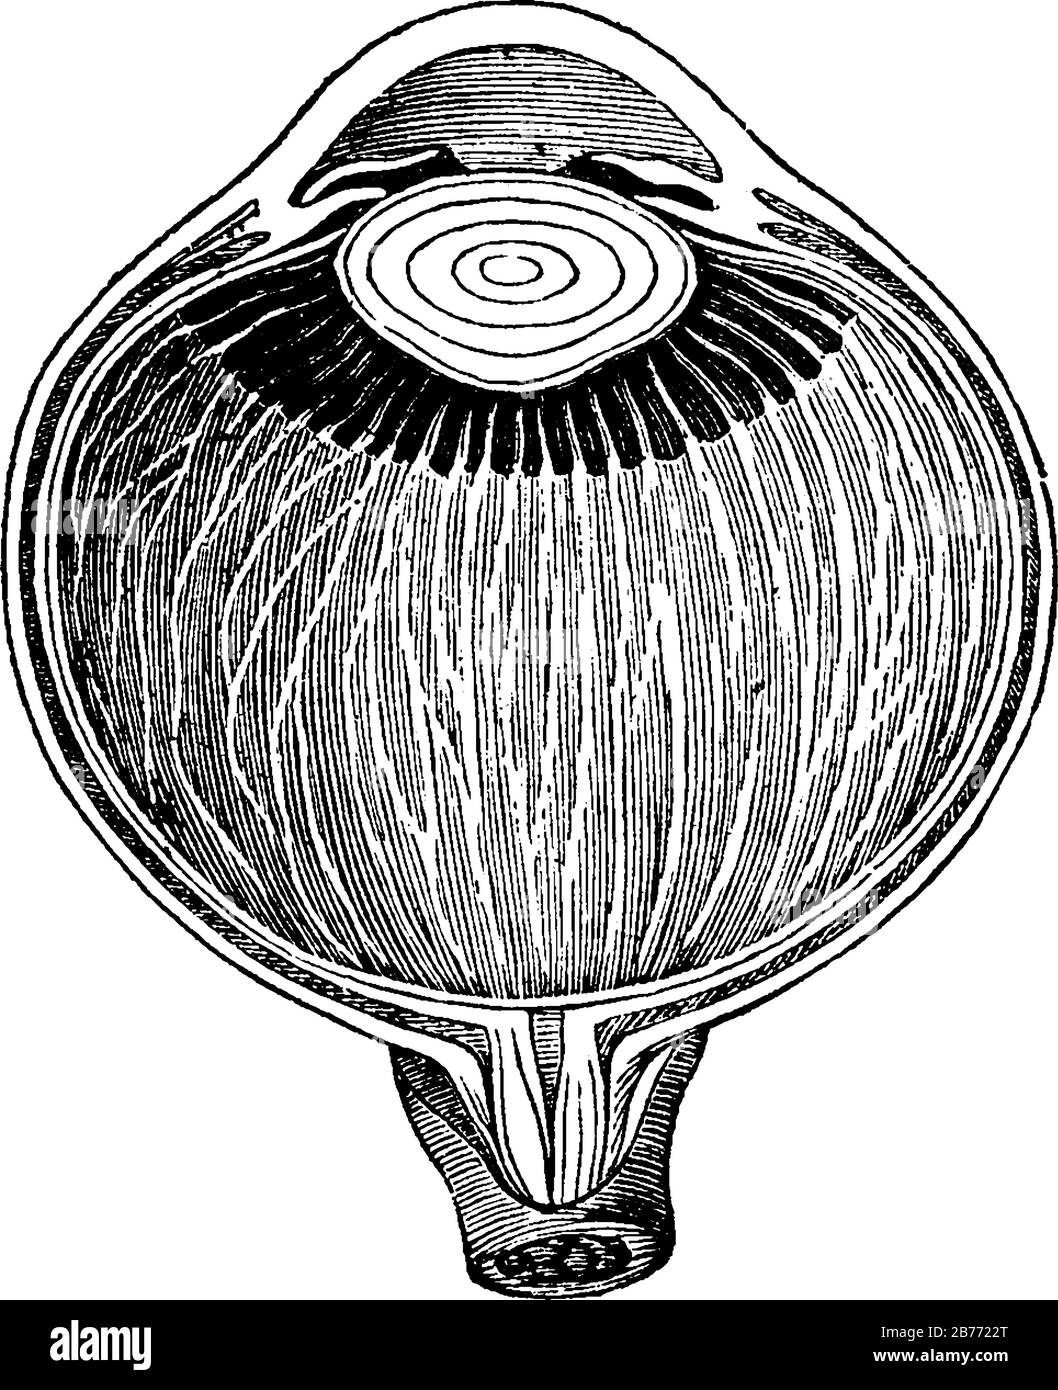 Sezione dell'occhio ingrandita, che mostra la lente cristallina nella sua situazione corretta, tra gli umori acquosi e vitrei. Mostra la sezione dell'ey Illustrazione Vettoriale